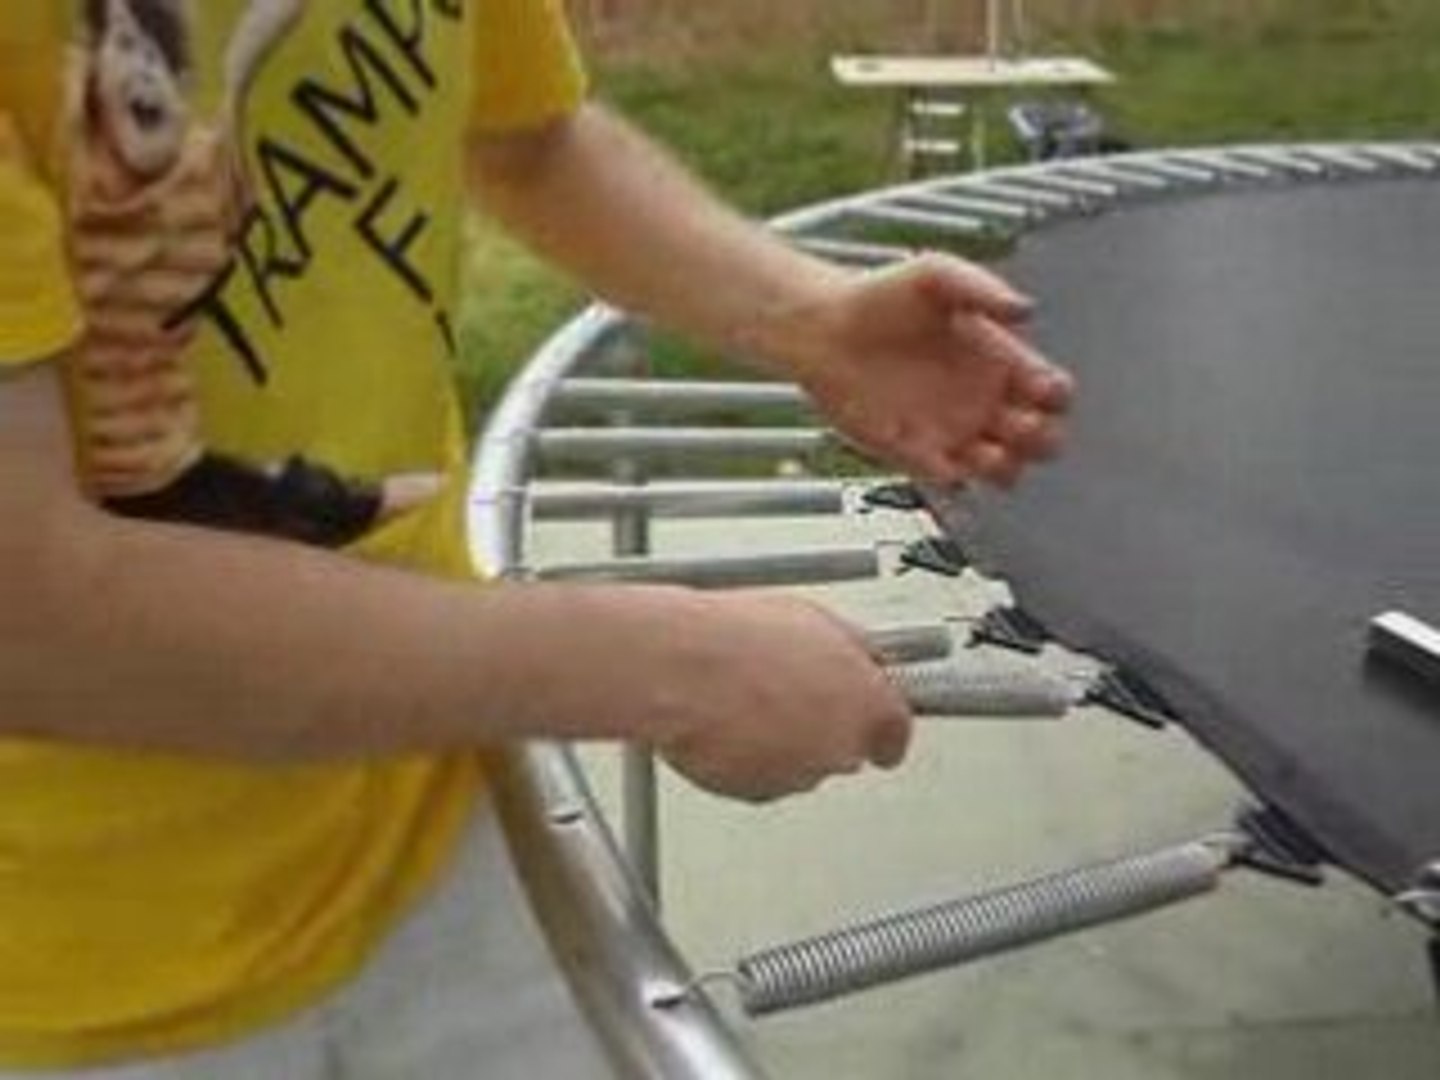 Tire ressorts - Outil pour le montage de trampolines